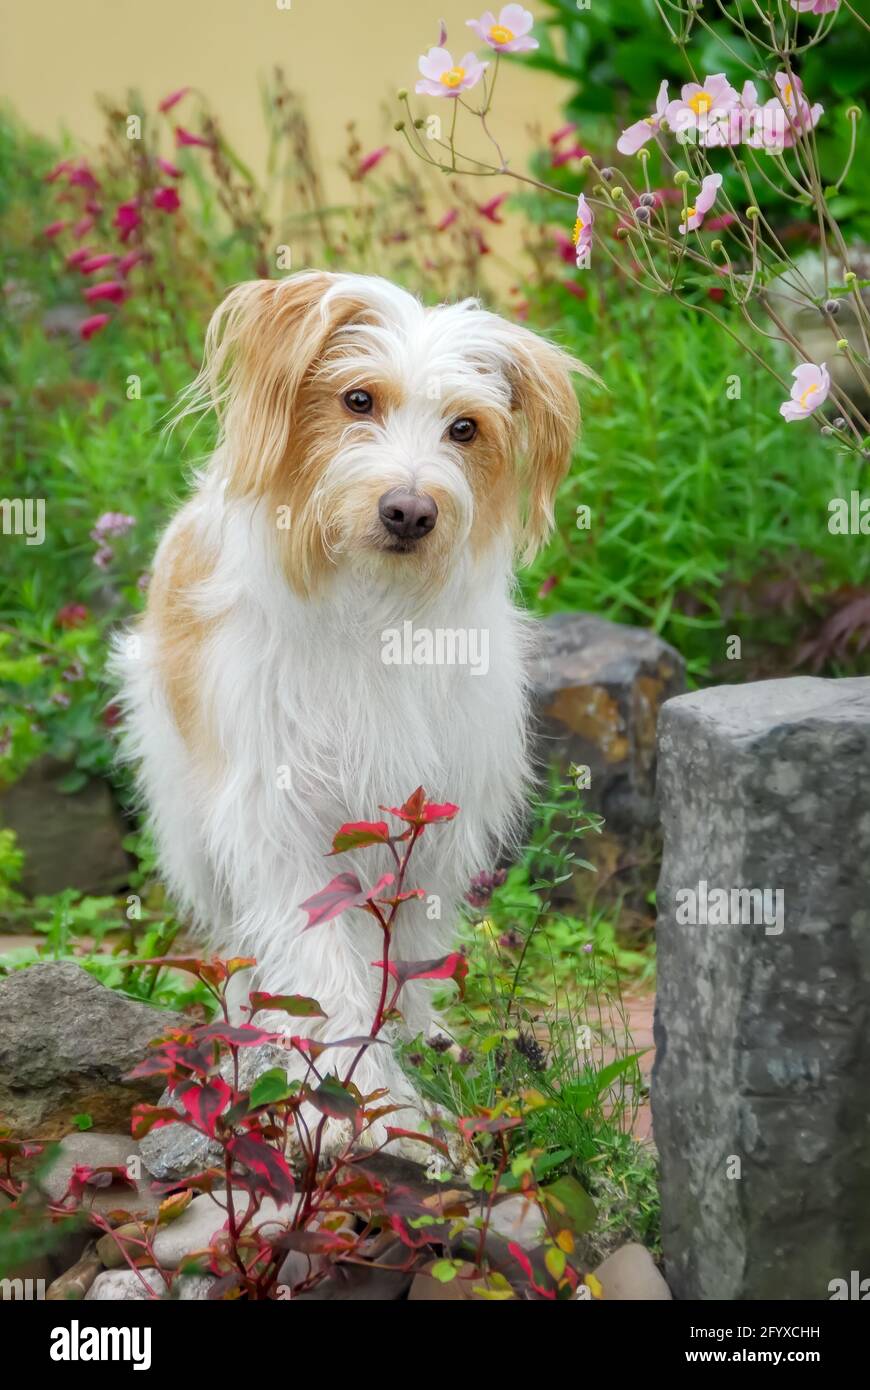 Kromfohrländer Hund, weiß mit braunen Markierungen raues Haar langhaarig, eine seltene Hunderasse aus Deutschland, die in einem blühenden Garten steht Stockfoto